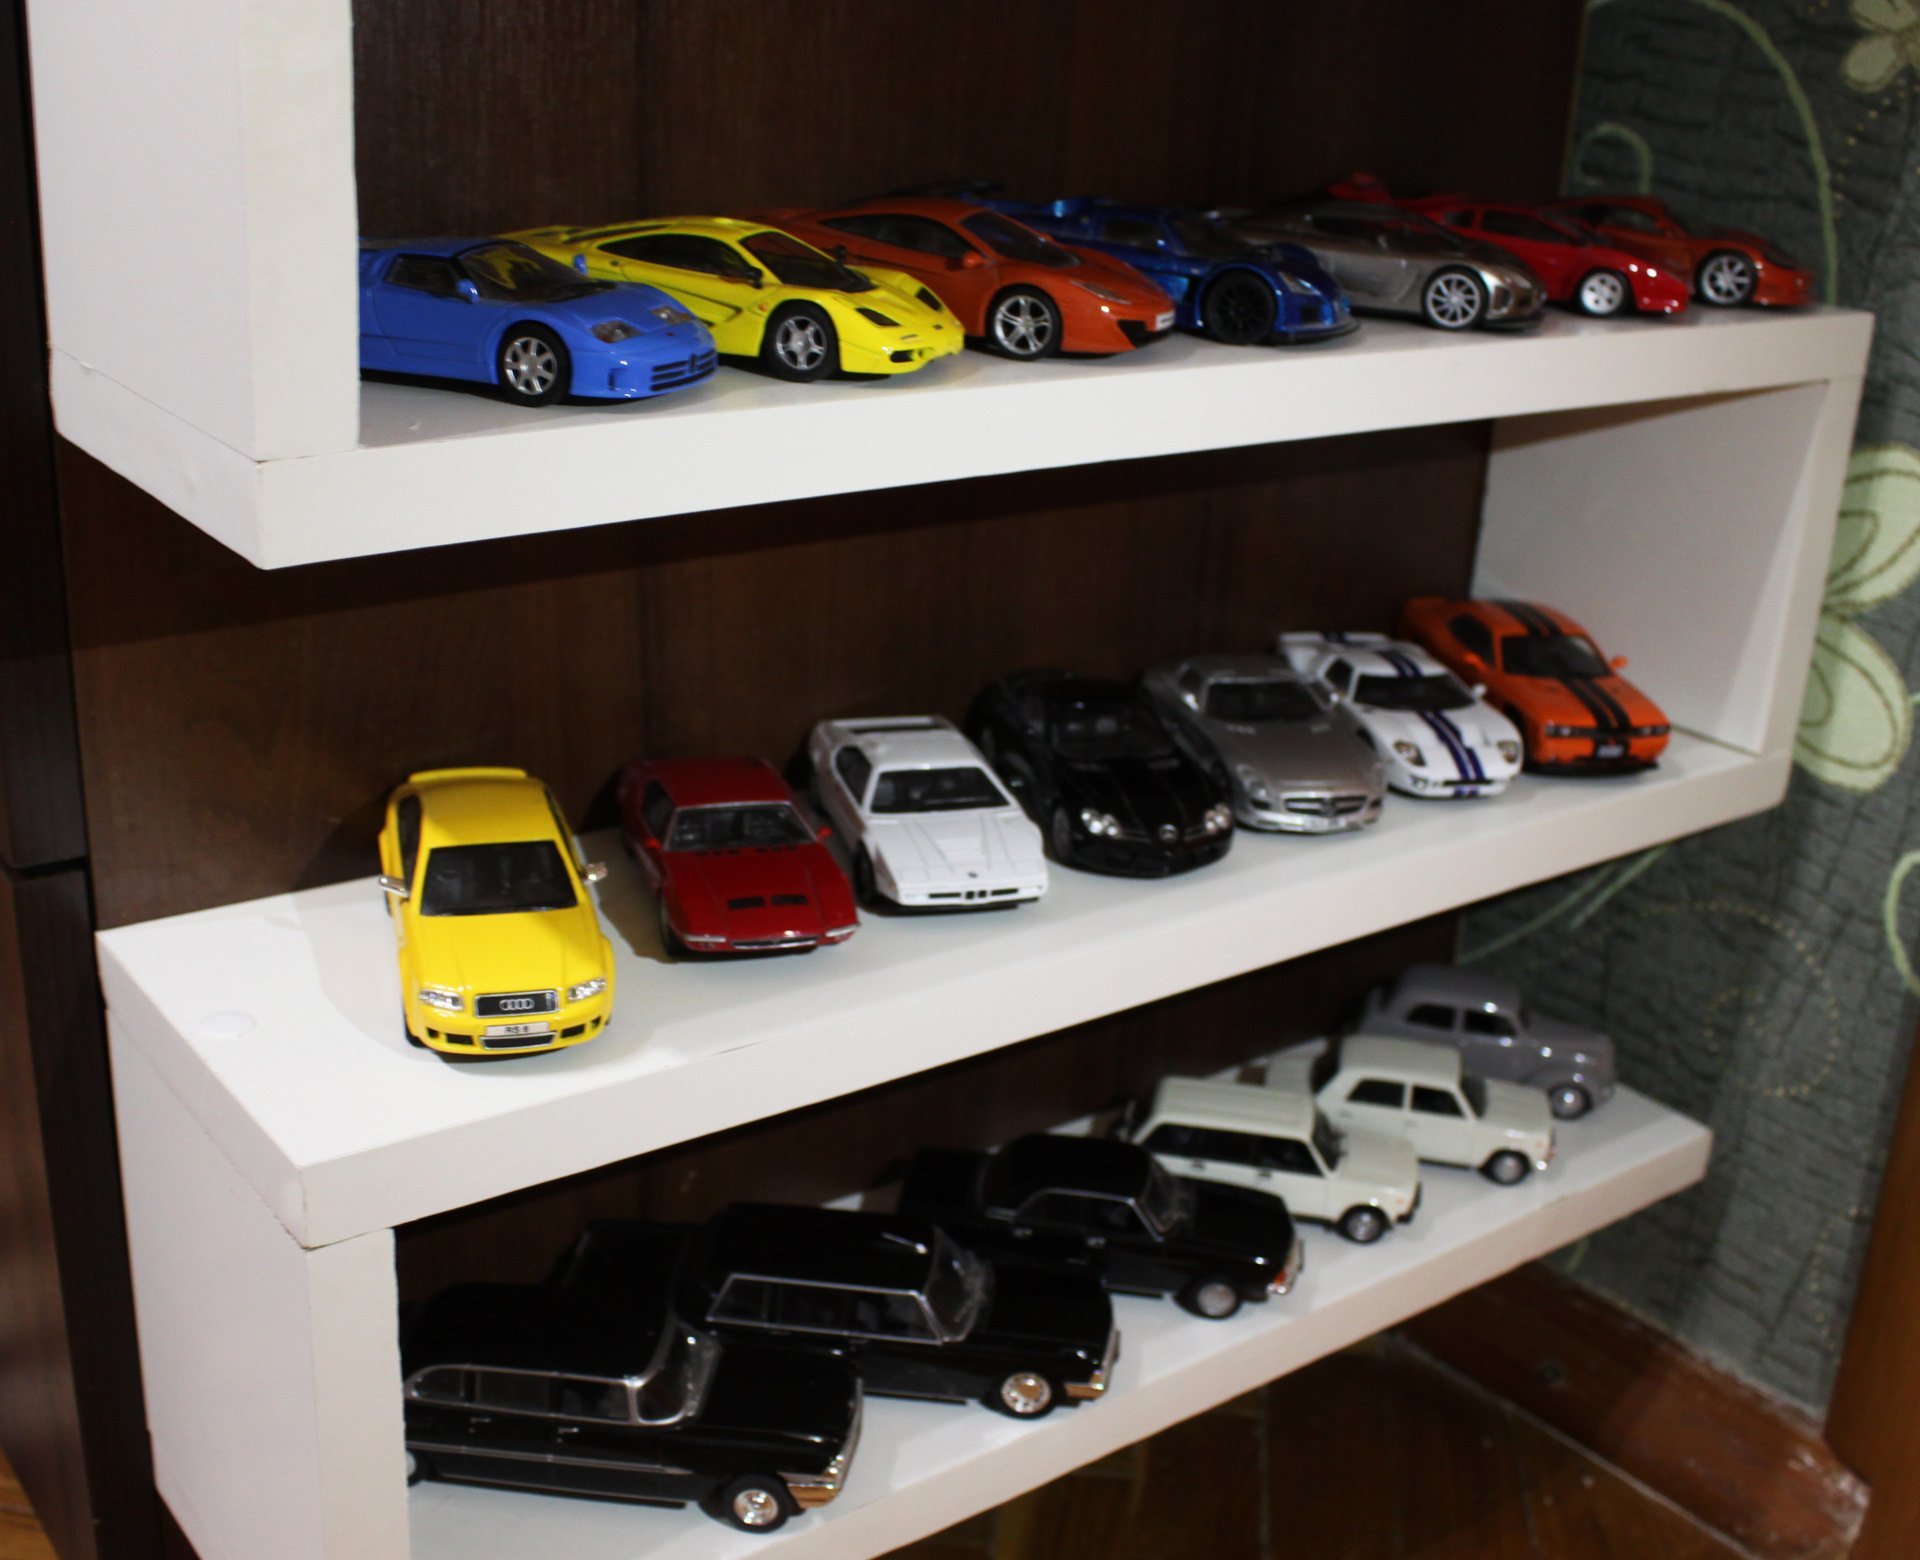 Стеллаж для коллекционных моделей автомобилей